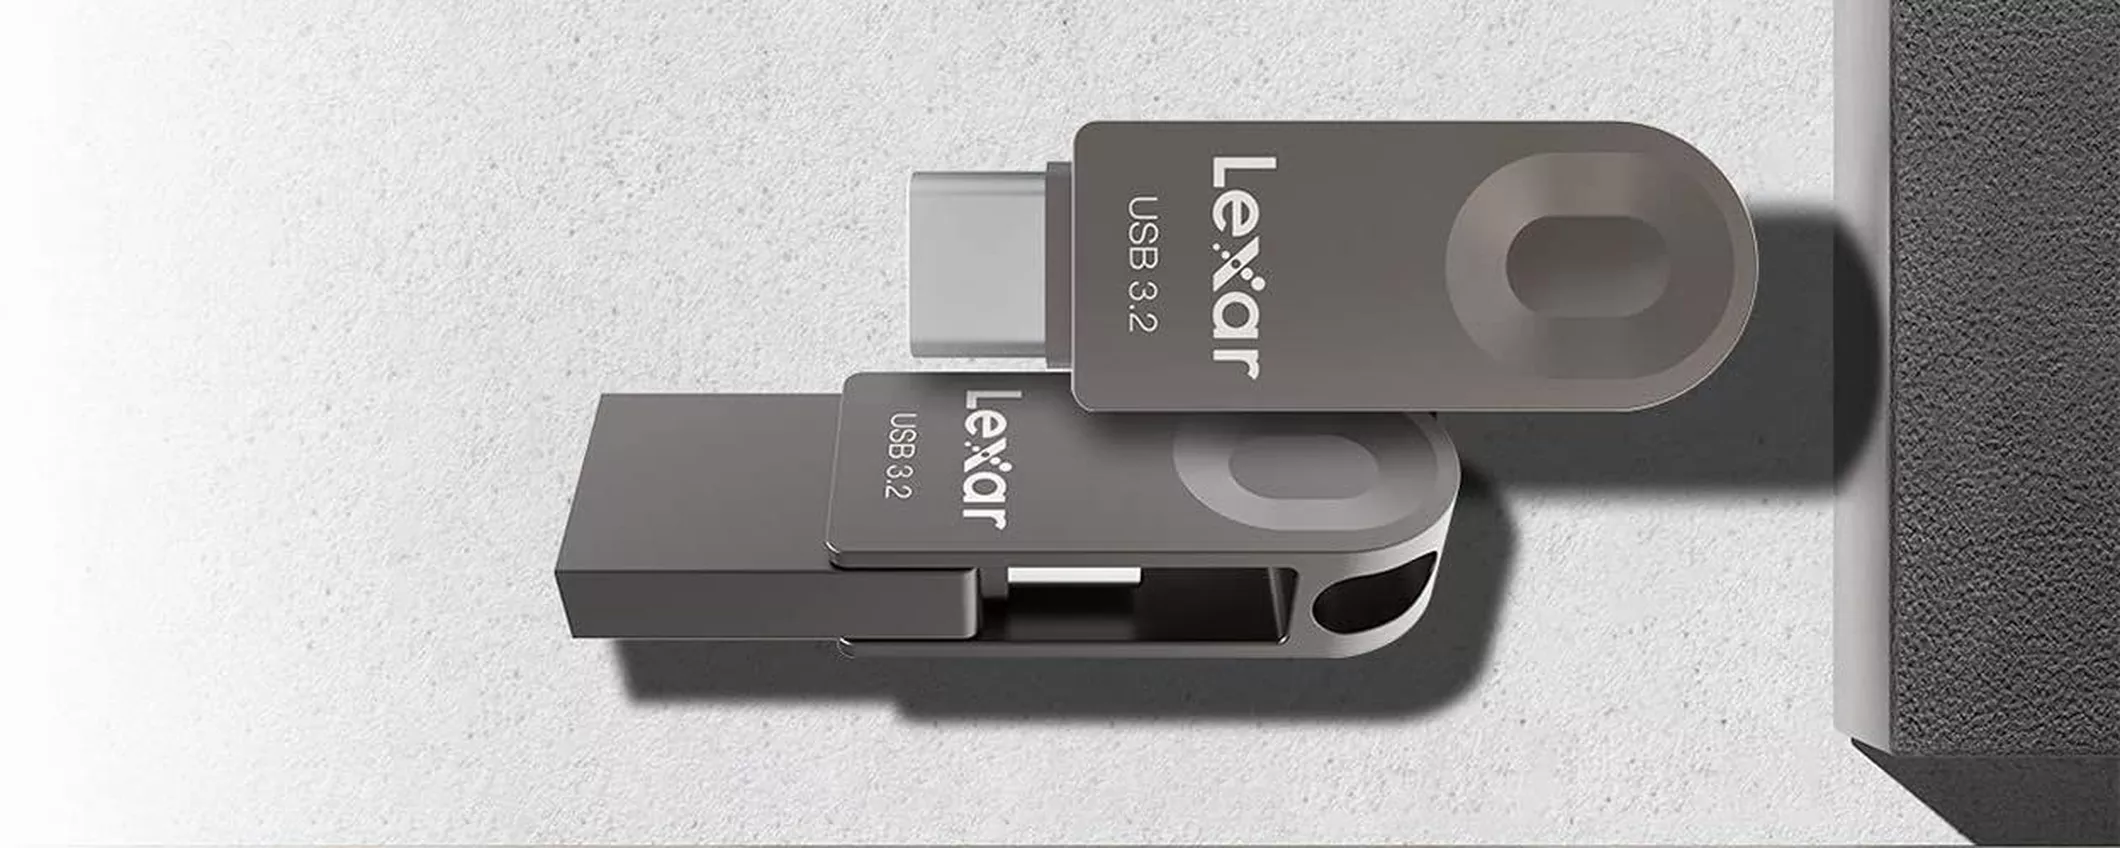 Pendrive Lexar in metallo da 64GB, robusta e durevole: oggi a prezzo omaggio su Amazon